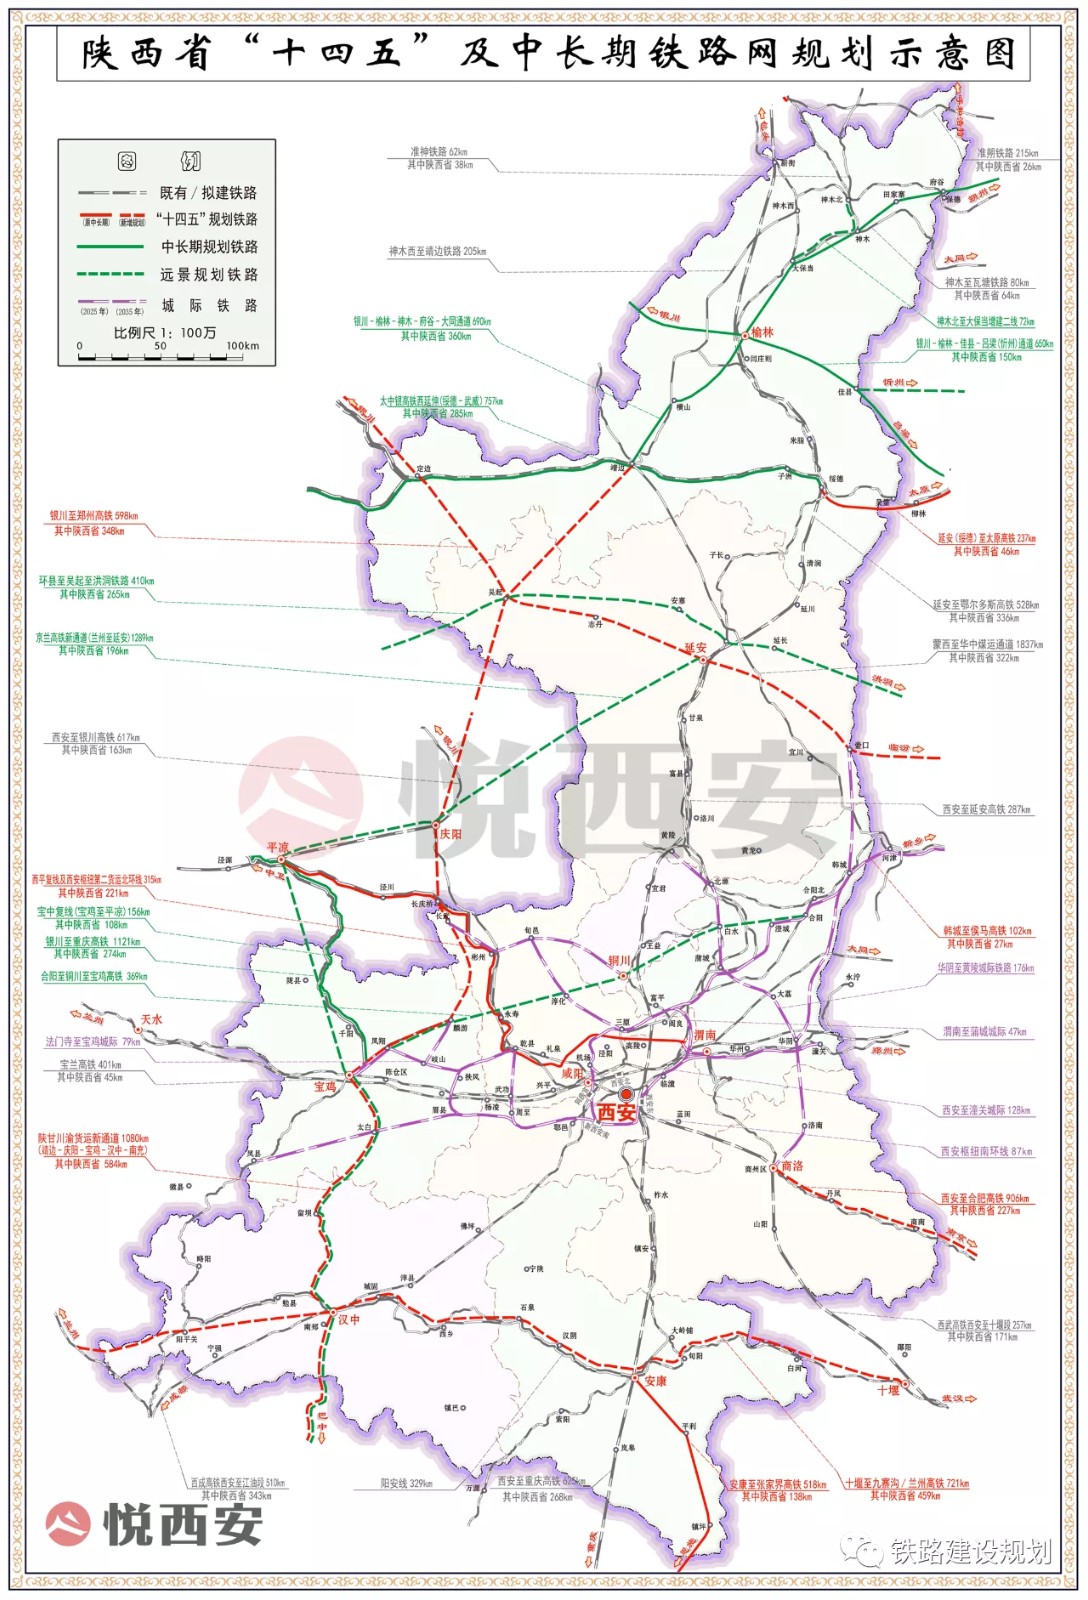 陕西十四五及中长期铁路规划图南充两条铁路入图